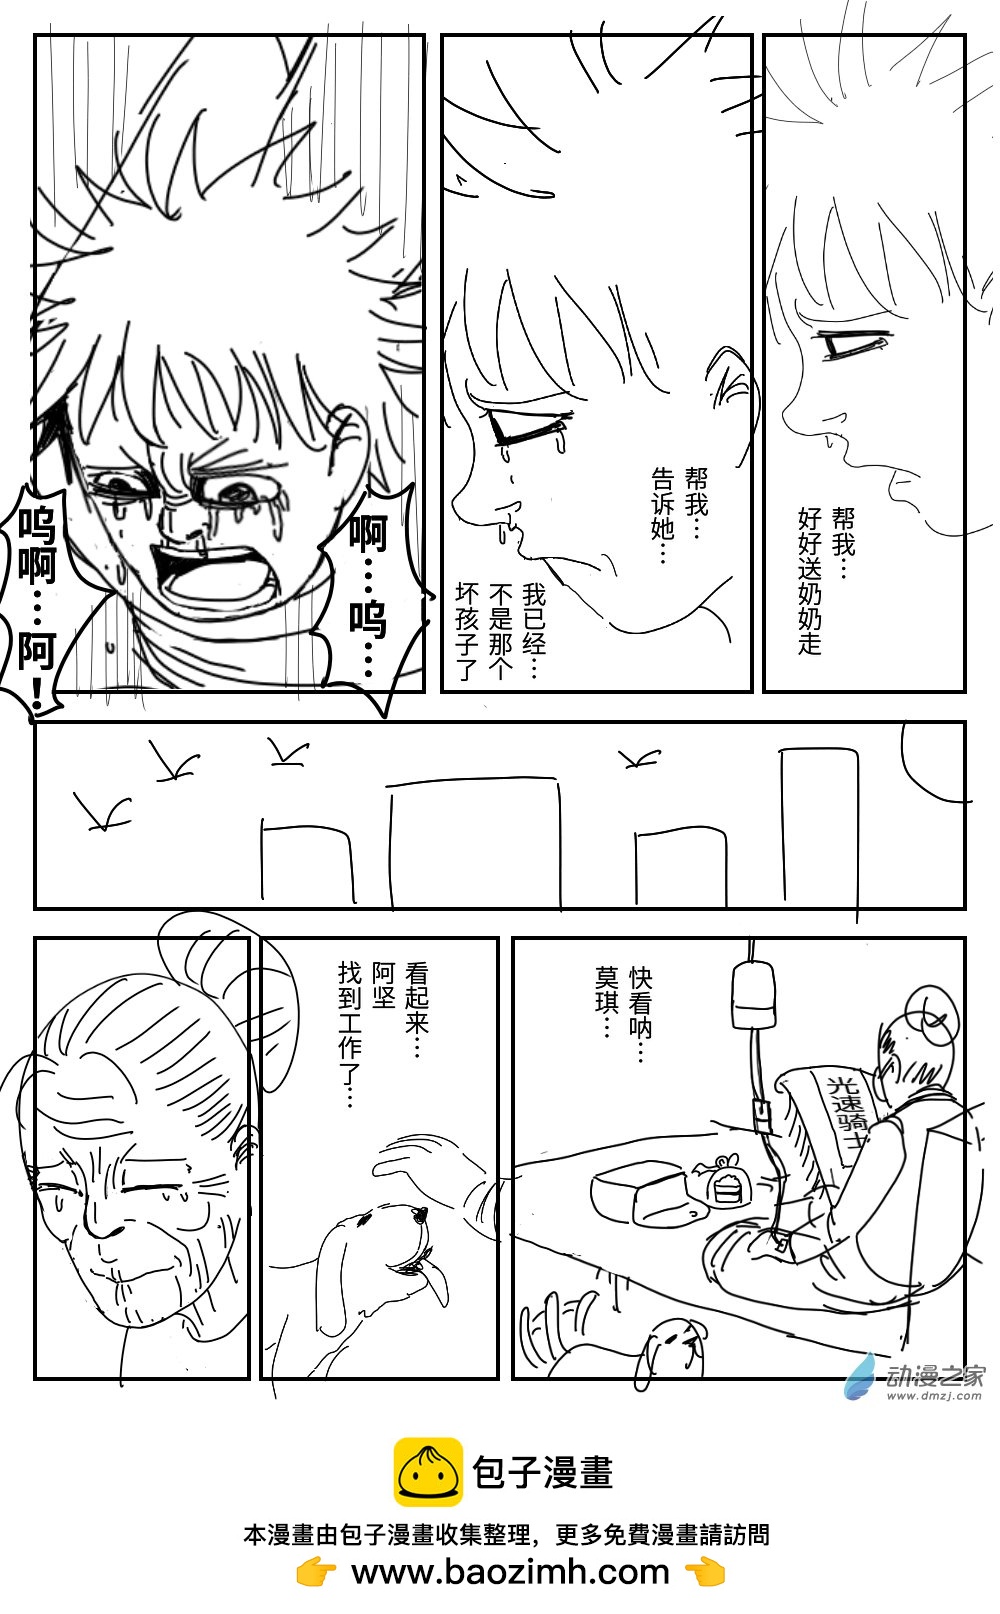 K神的短篇漫畫集 - 04 越獄 - 4